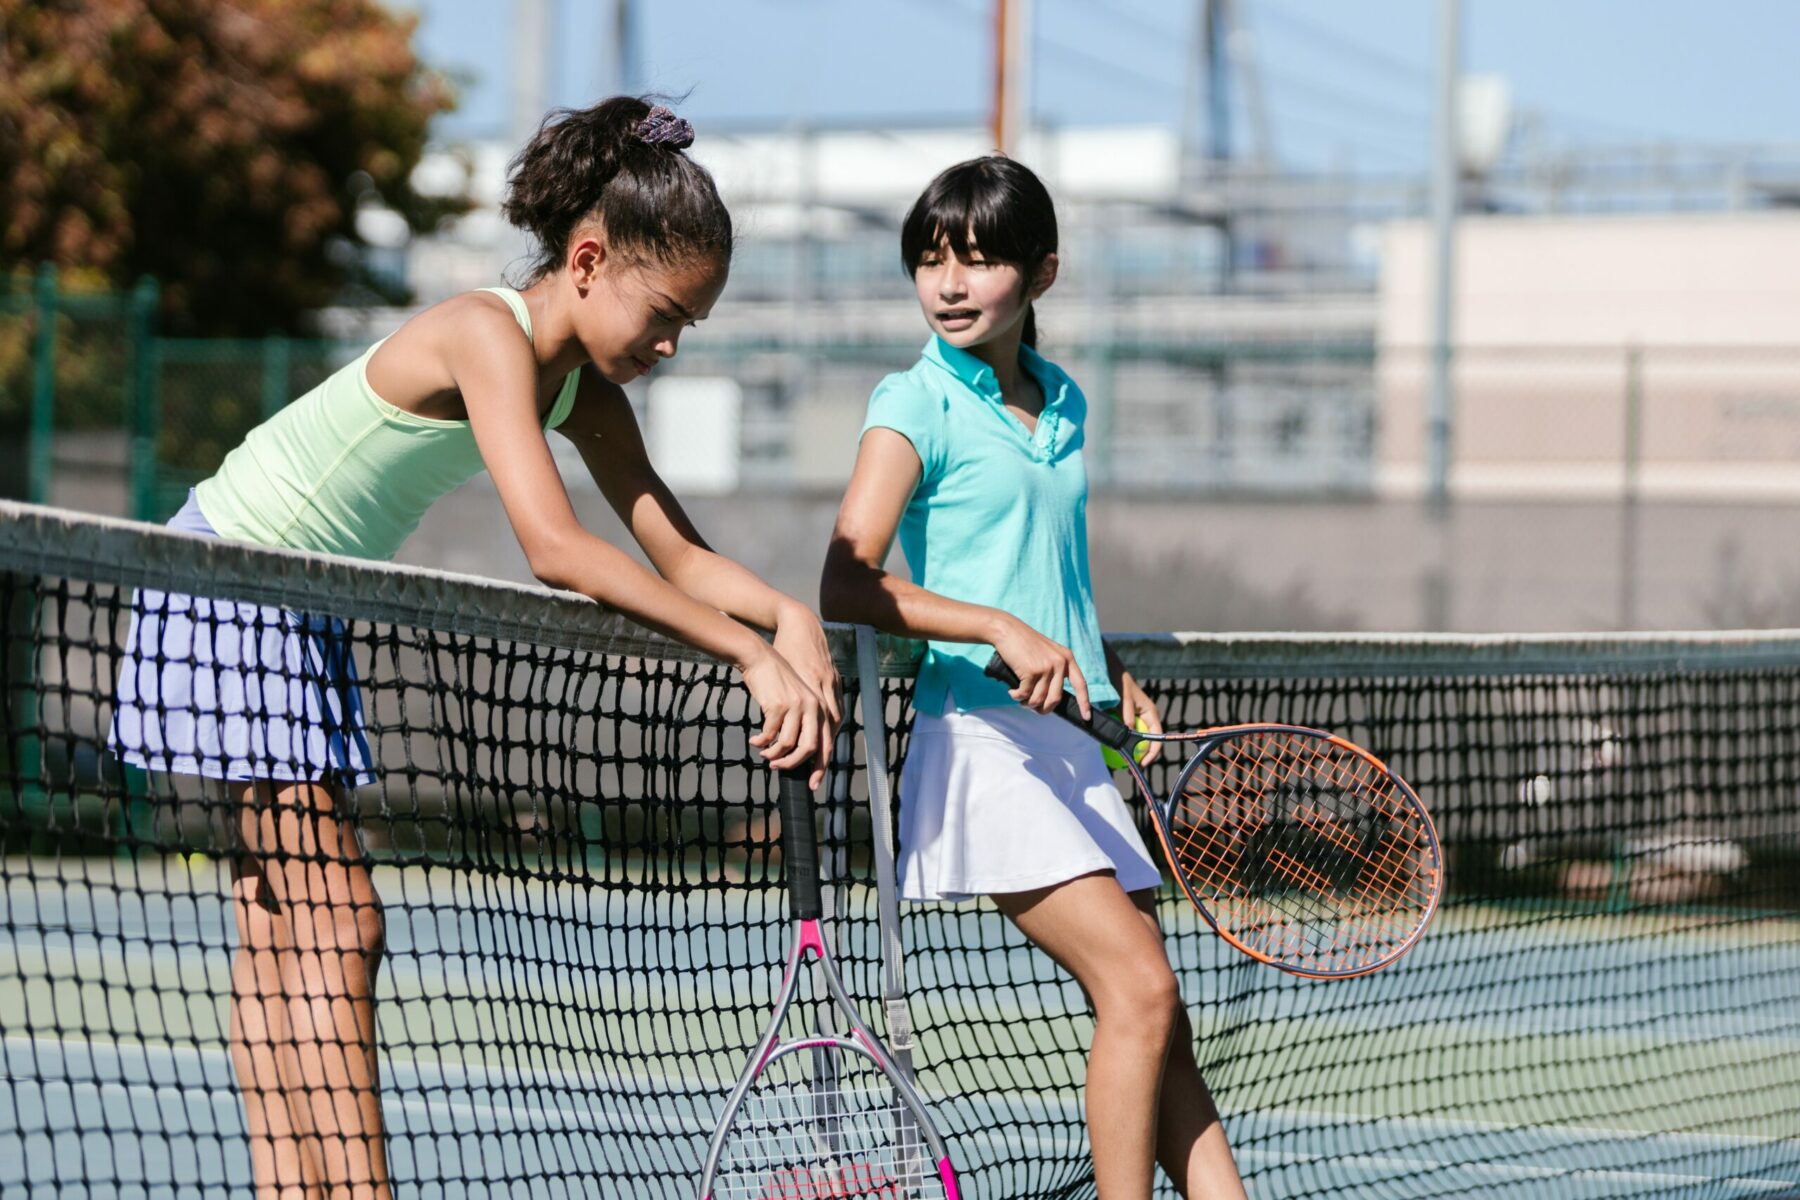 Girls playing tennis.